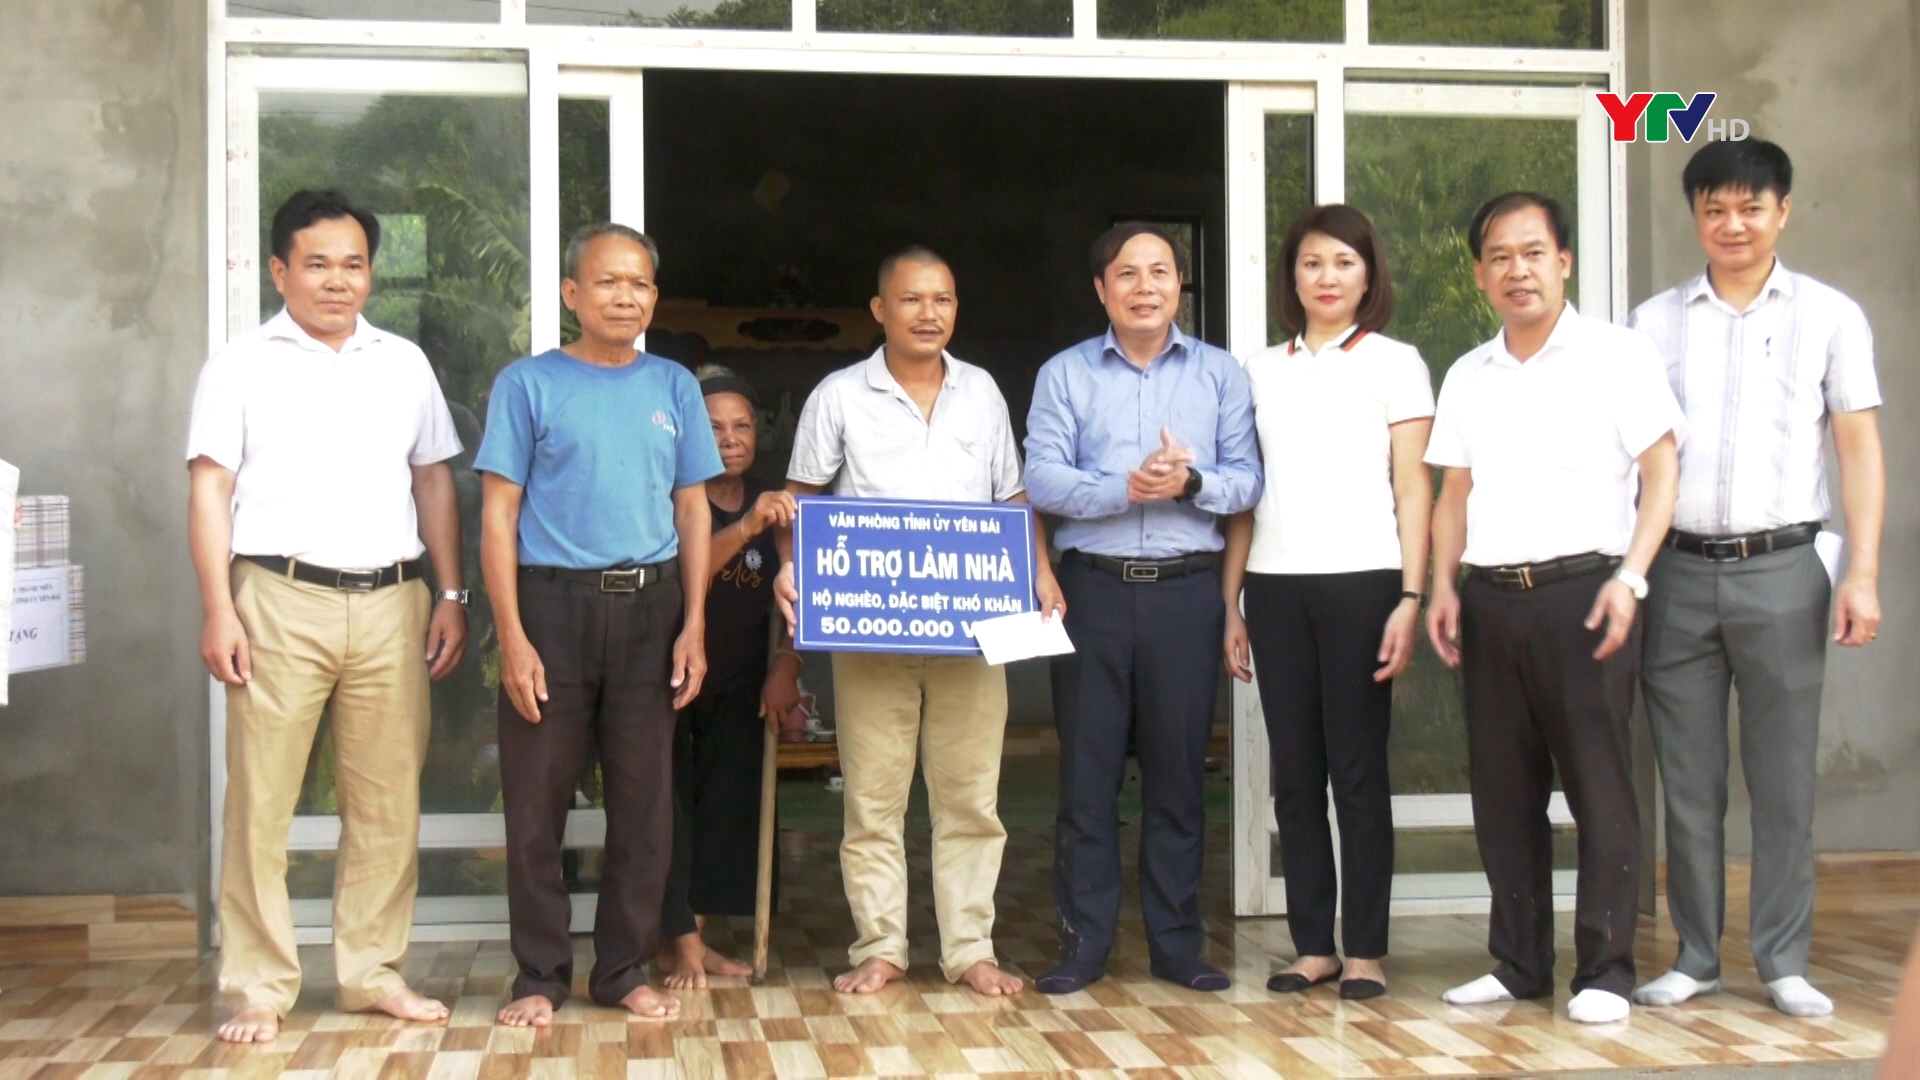 Văn phòng Tỉnh uỷ Yên Bái đã trao tiền hỗ trợ làm nhà cho hộ nghèo tại Yên Bình